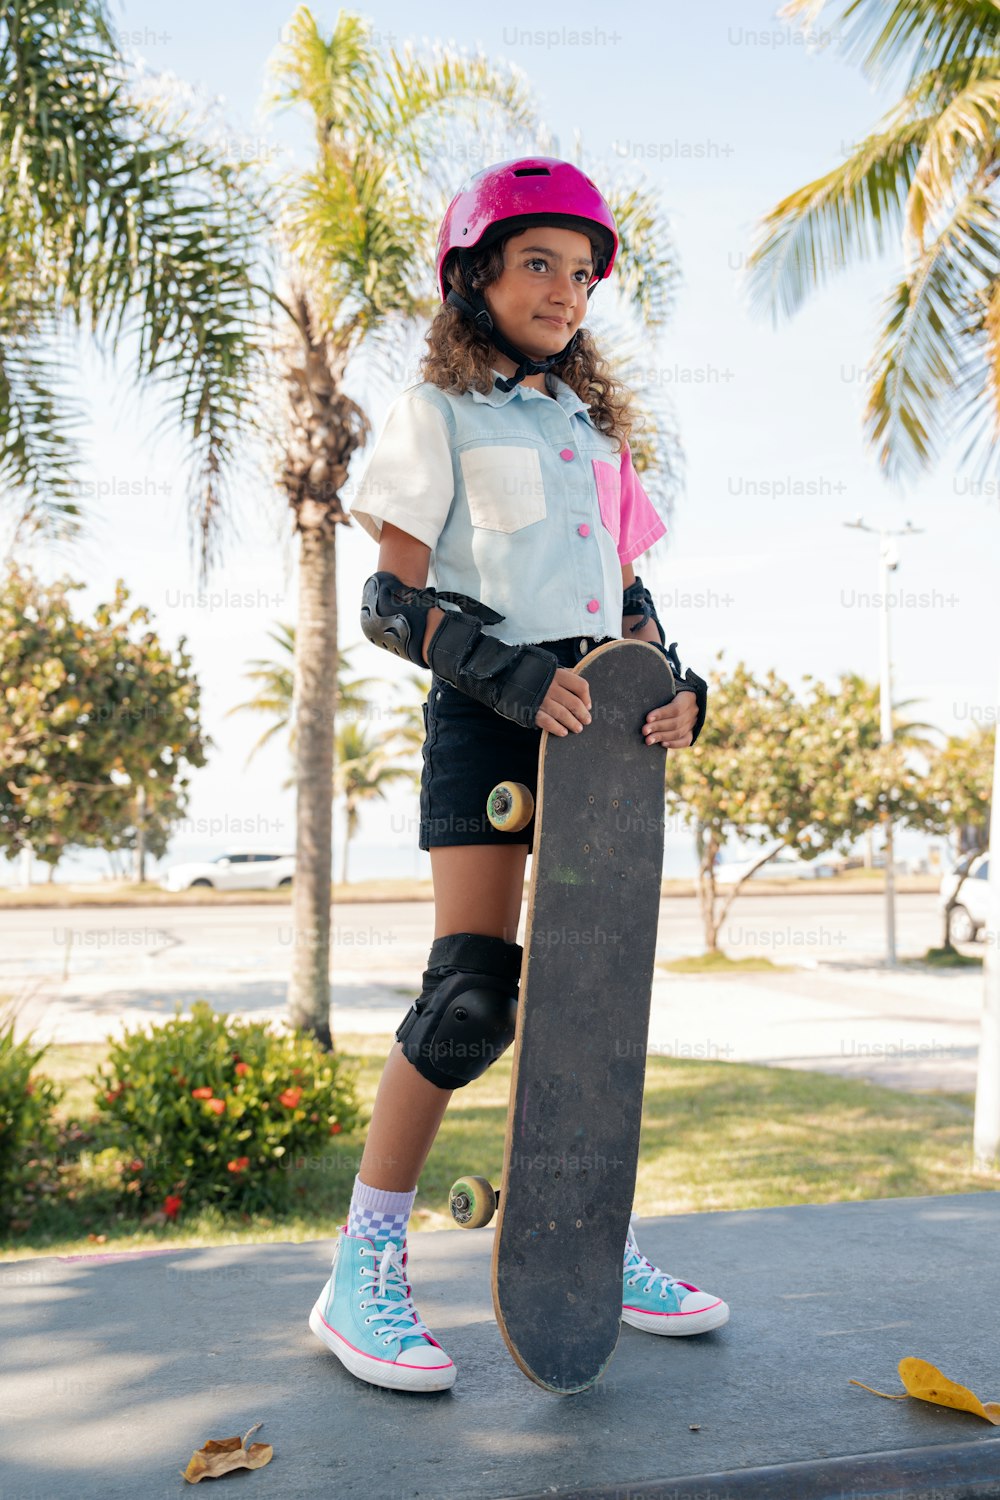 une jeune fille tenant une planche à roulettes sur un trottoir